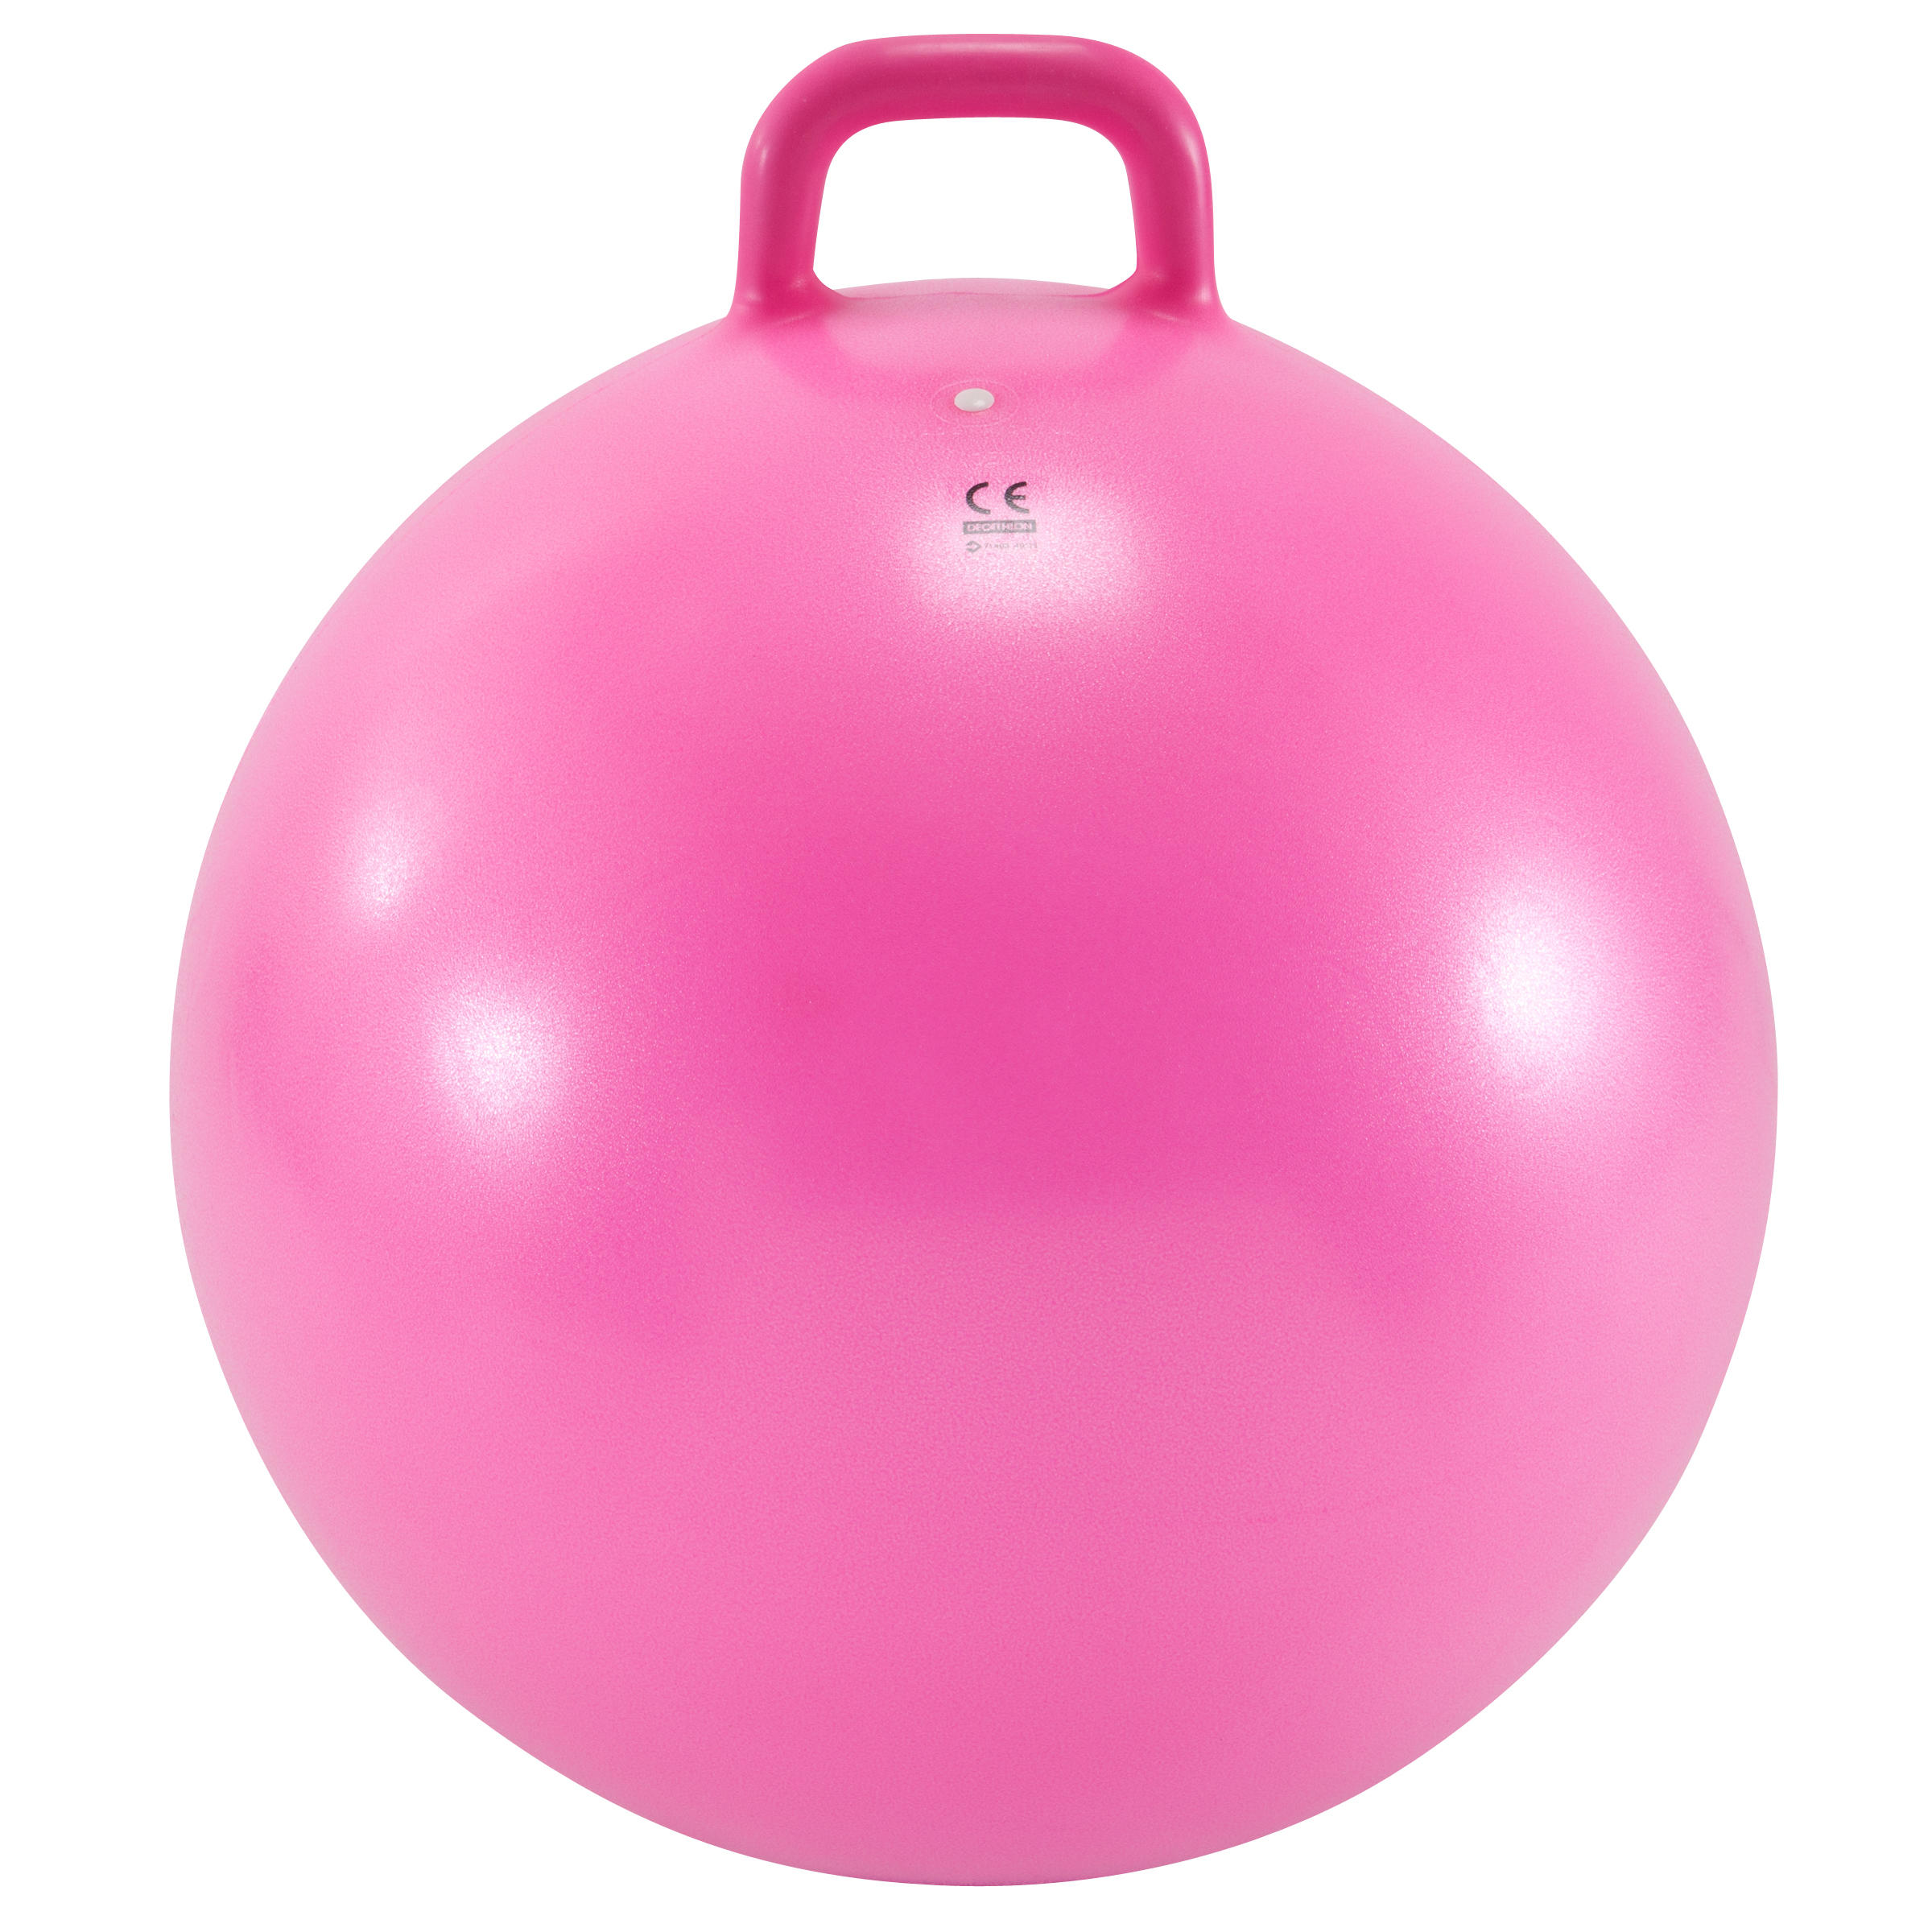 Ballon sauteur enfant – Resist rose - DOMYOS